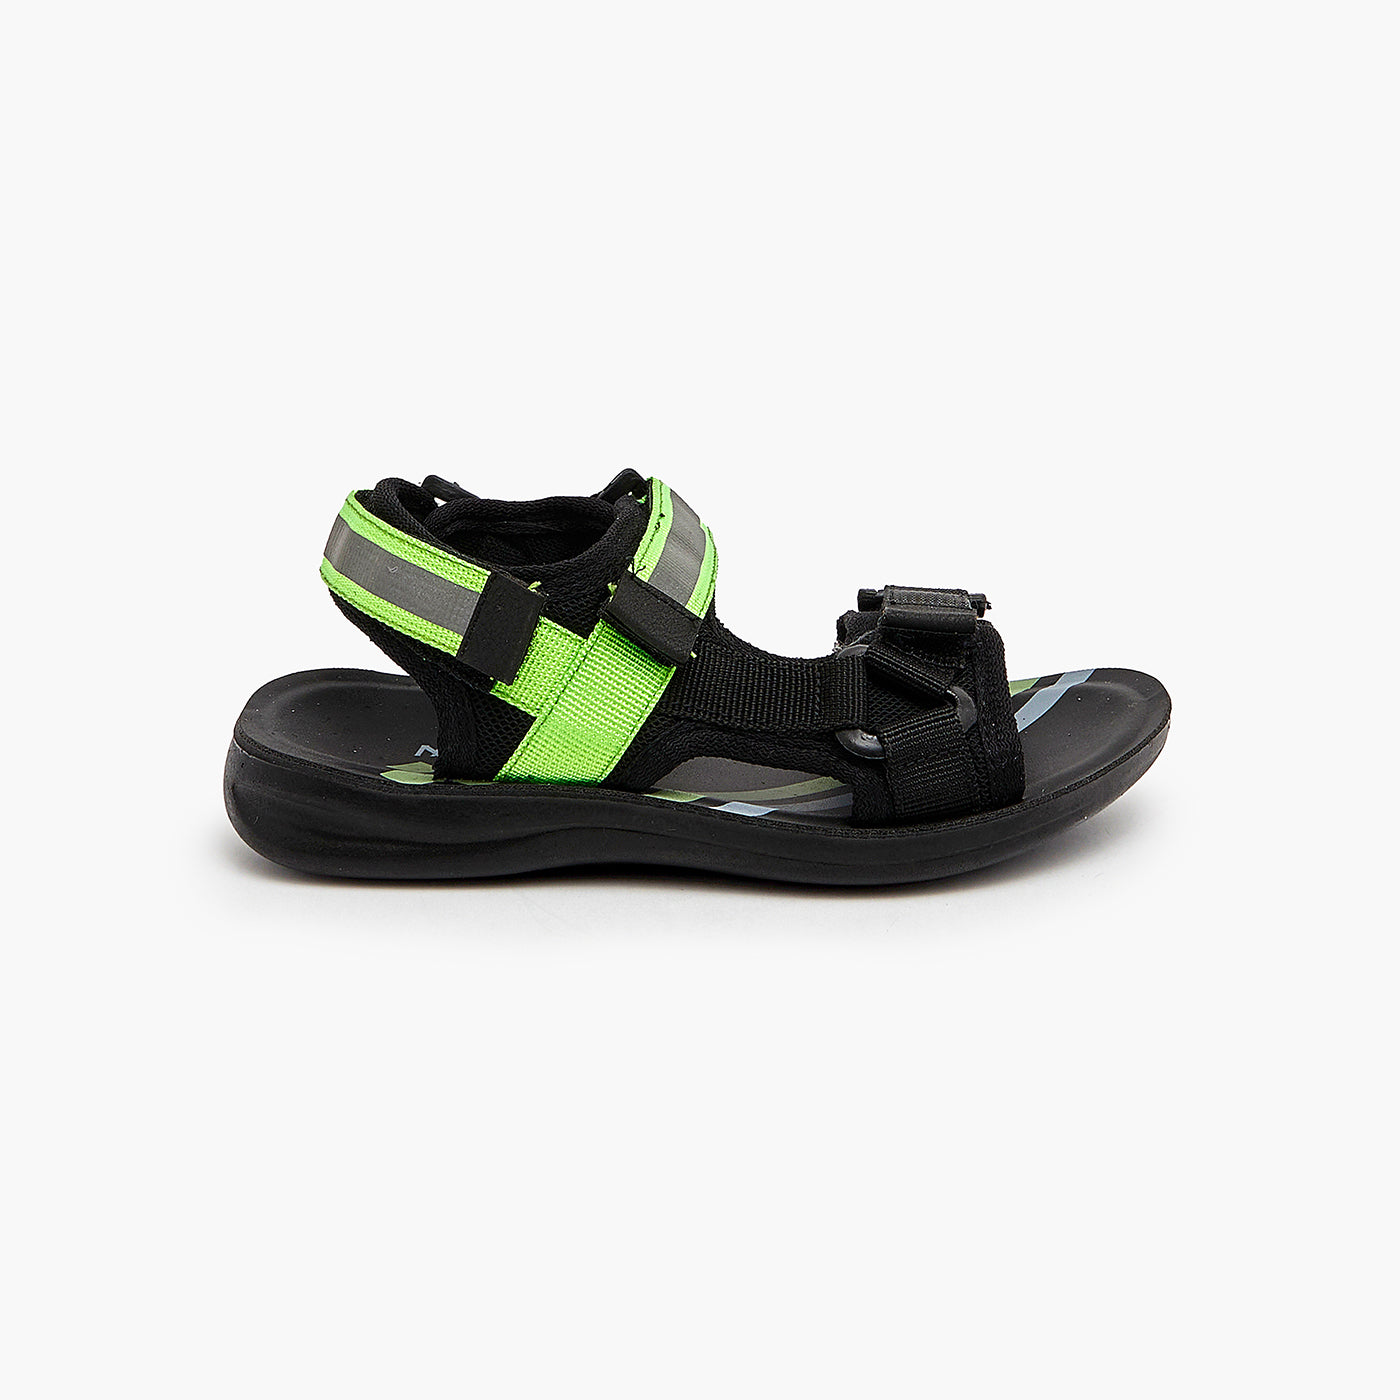 Boys Basic Summer Sandals